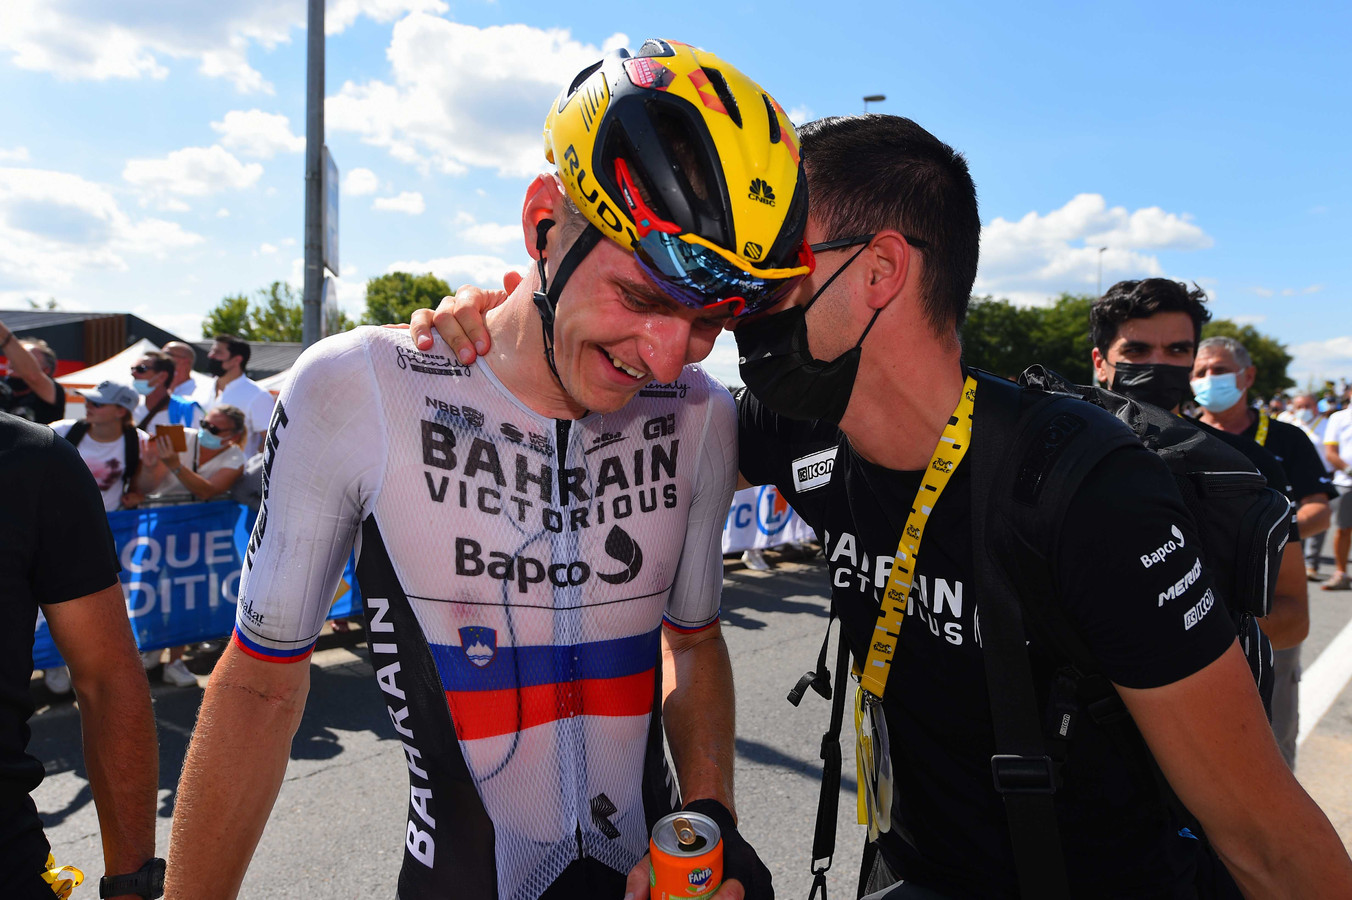 Matej Mohoric won vrijdag ook nog de etappe van Mourenx naar Libourne, waarmee hij voor een derde Sloveens feestje op rij zorgde.